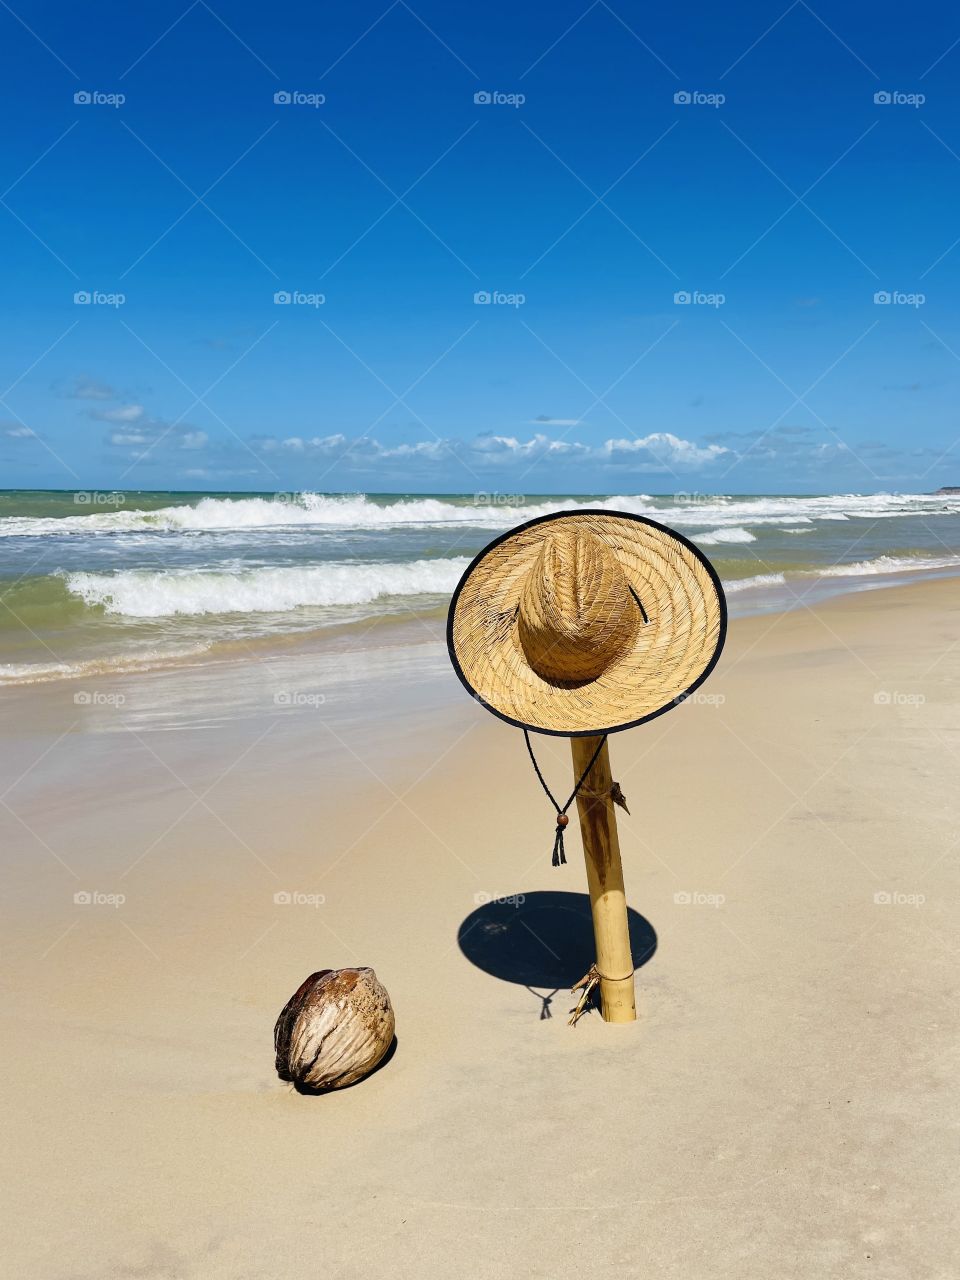 Beach, coconut, sun and sea